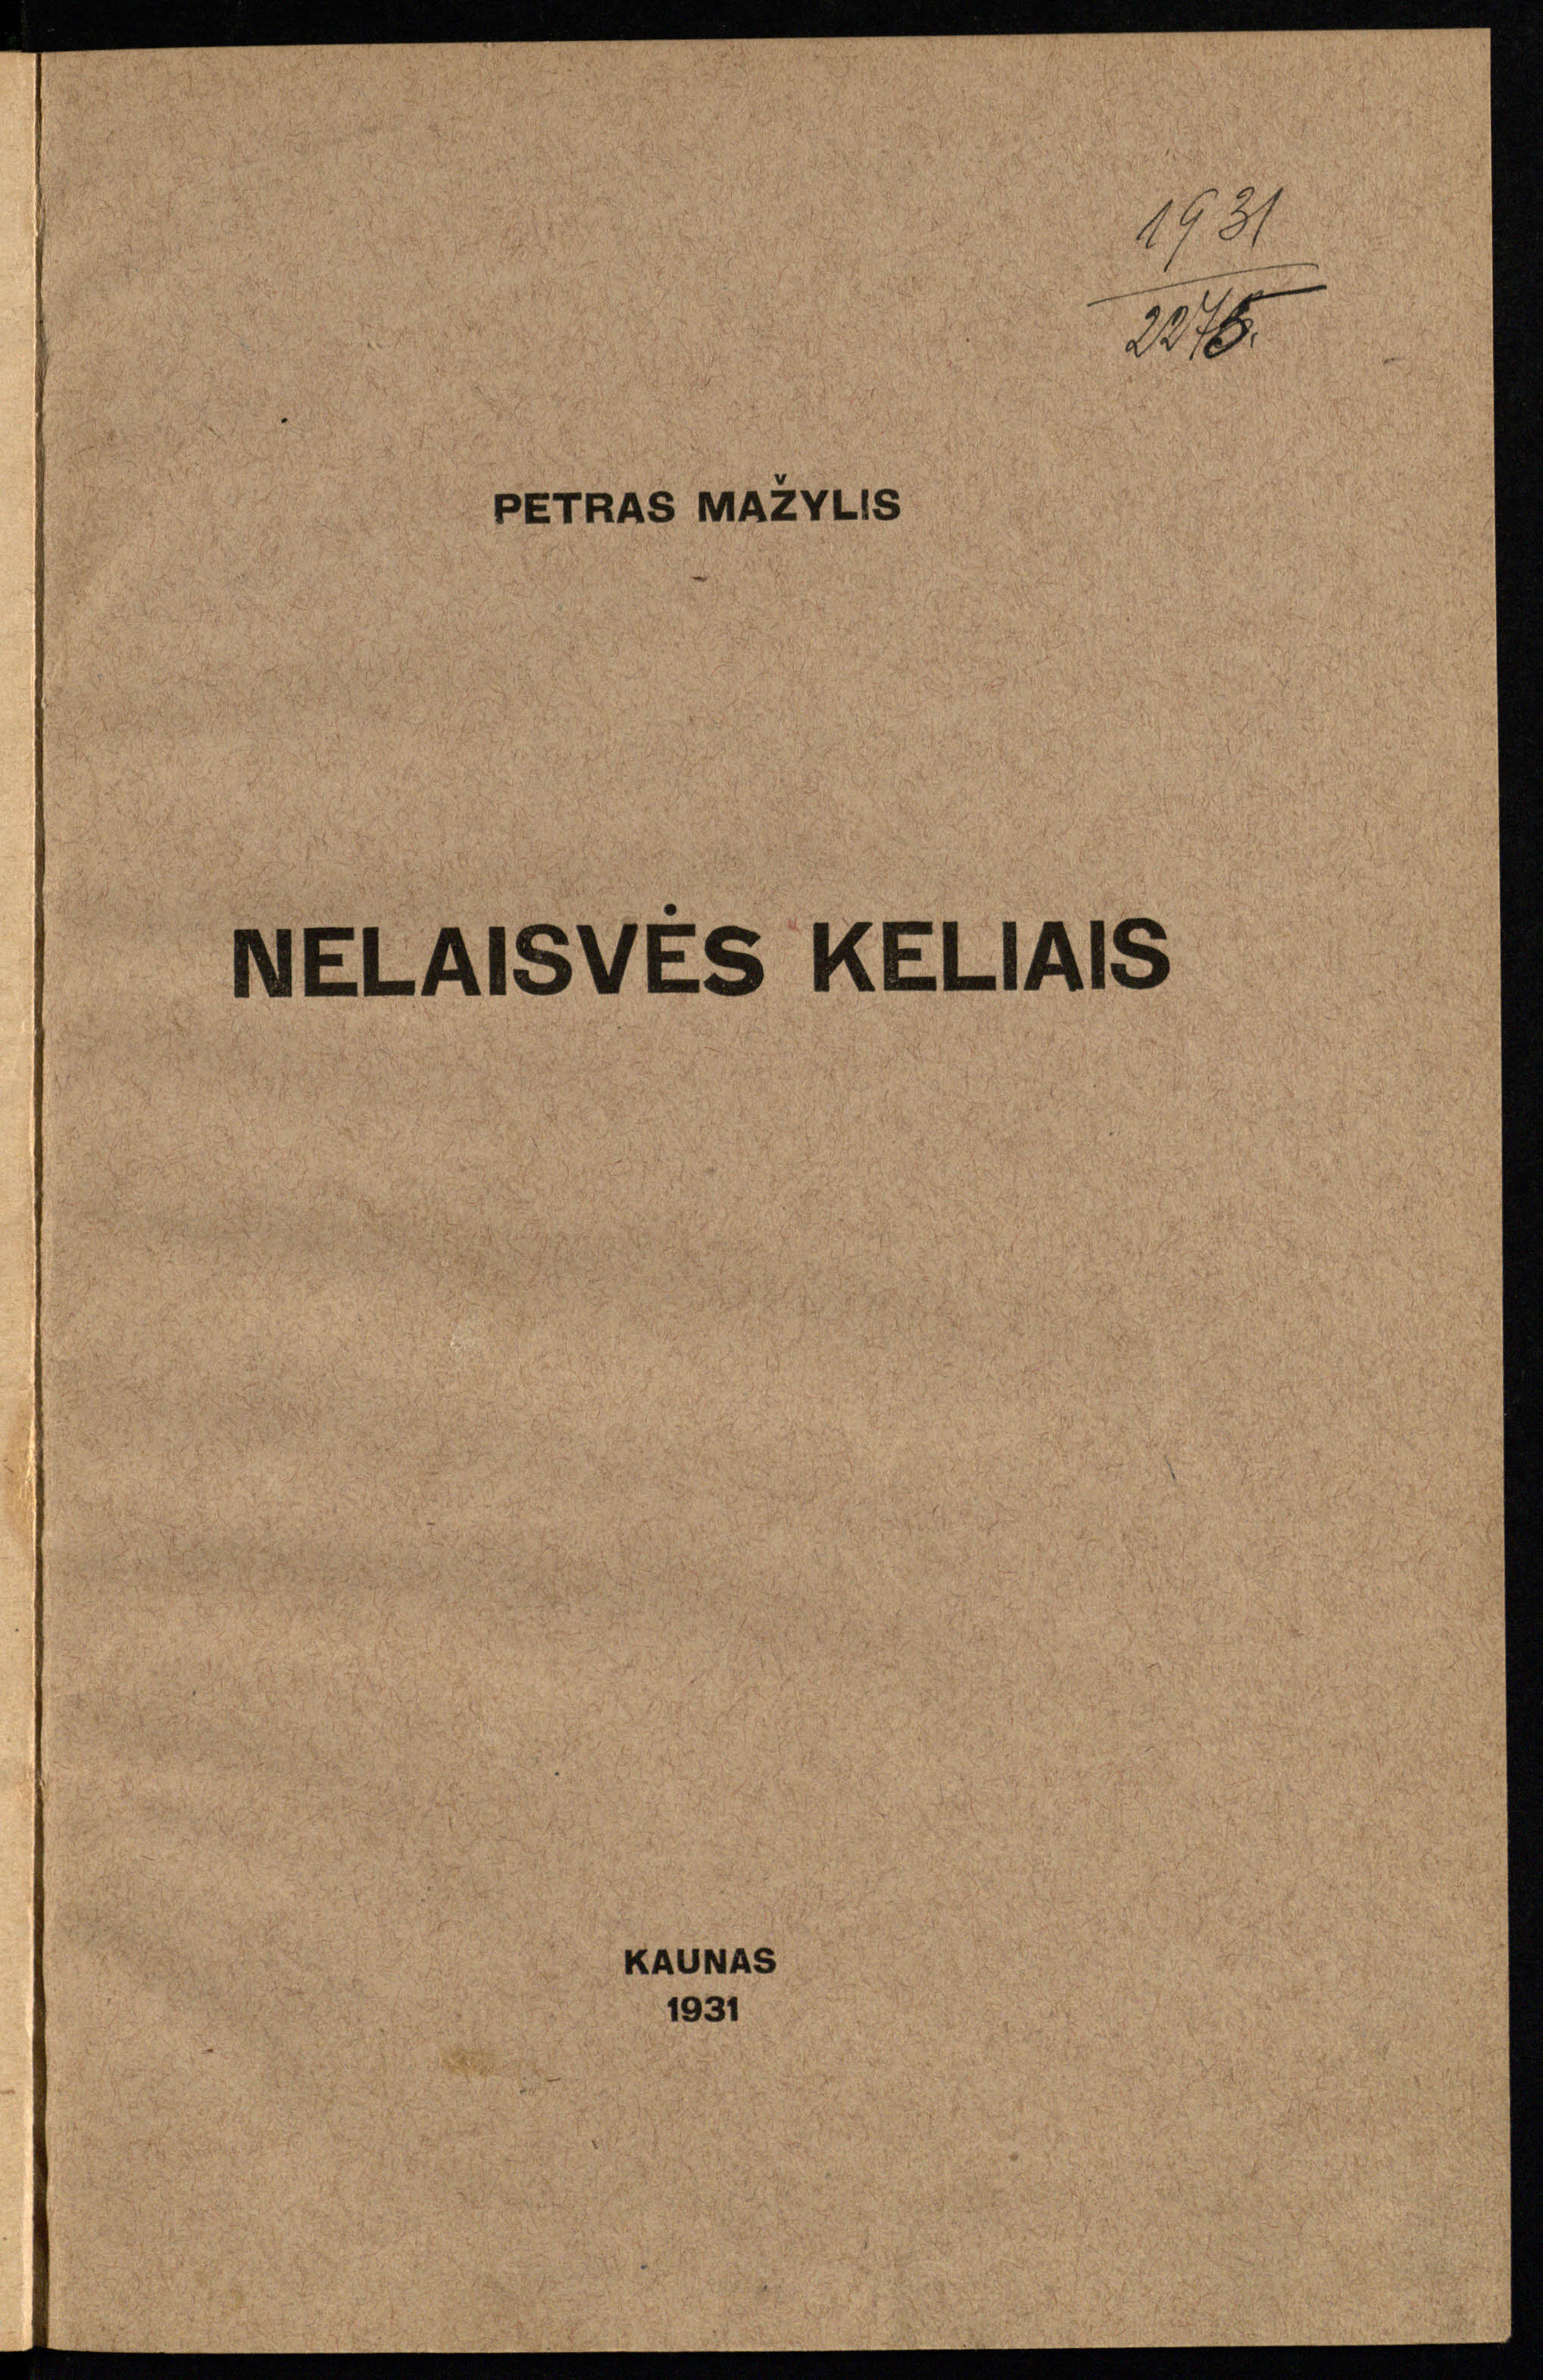 Petro Mažylio atsiminimuose „Nelaisvės keliais“ (Kaunas, 1931) autorius detaliai aprašė belaisvių stovyklų Austrijoje veiklą